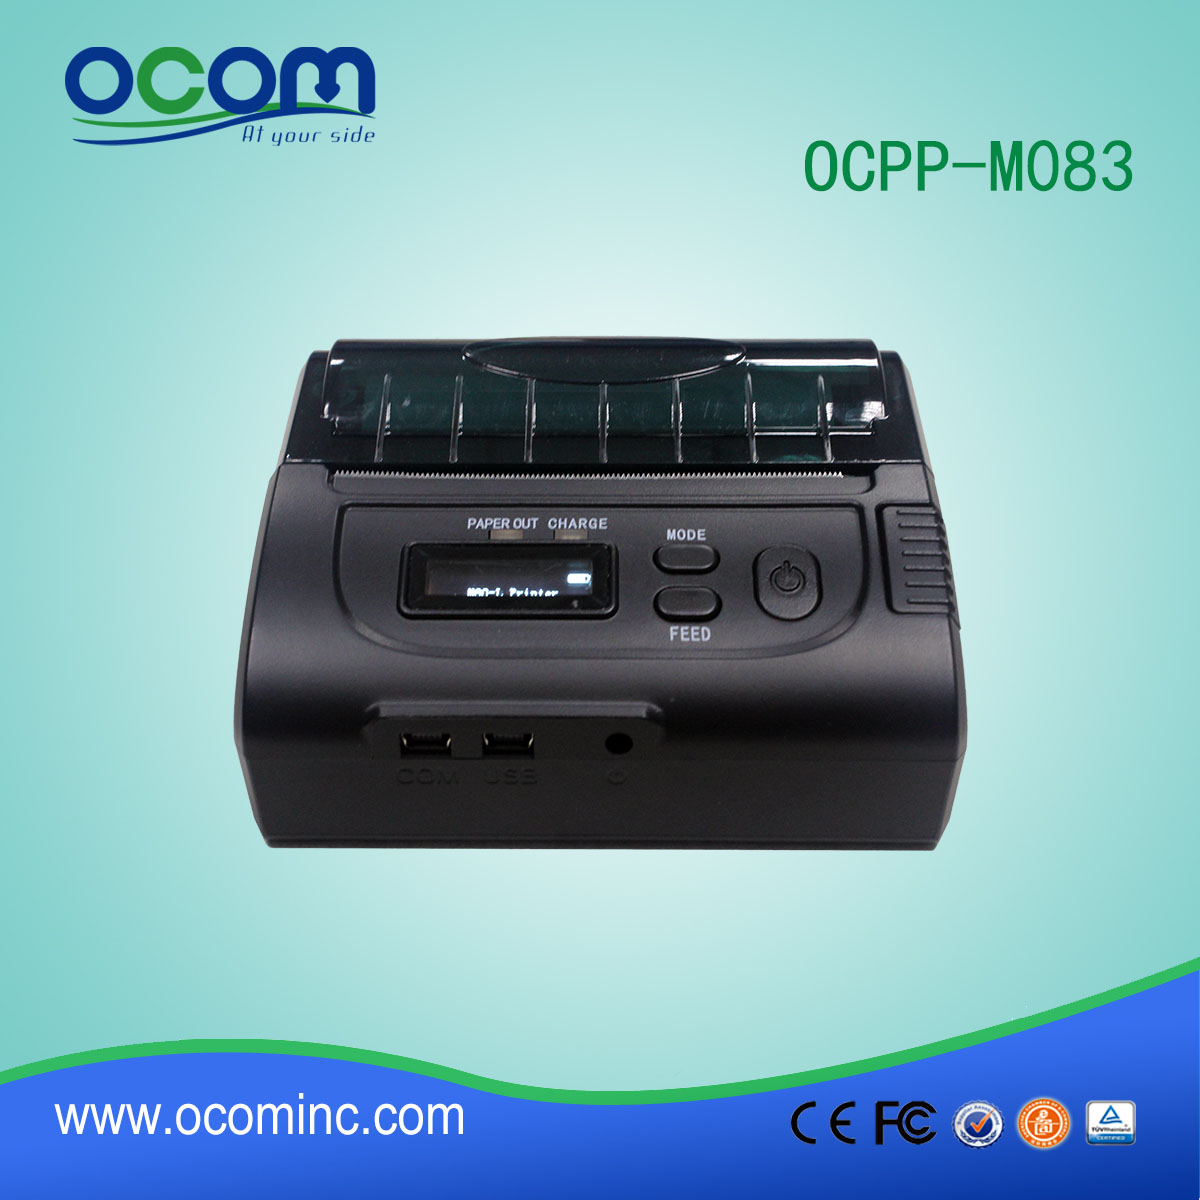 80毫米蓝牙热敏打印机Pos收据打印机OCPP-M083